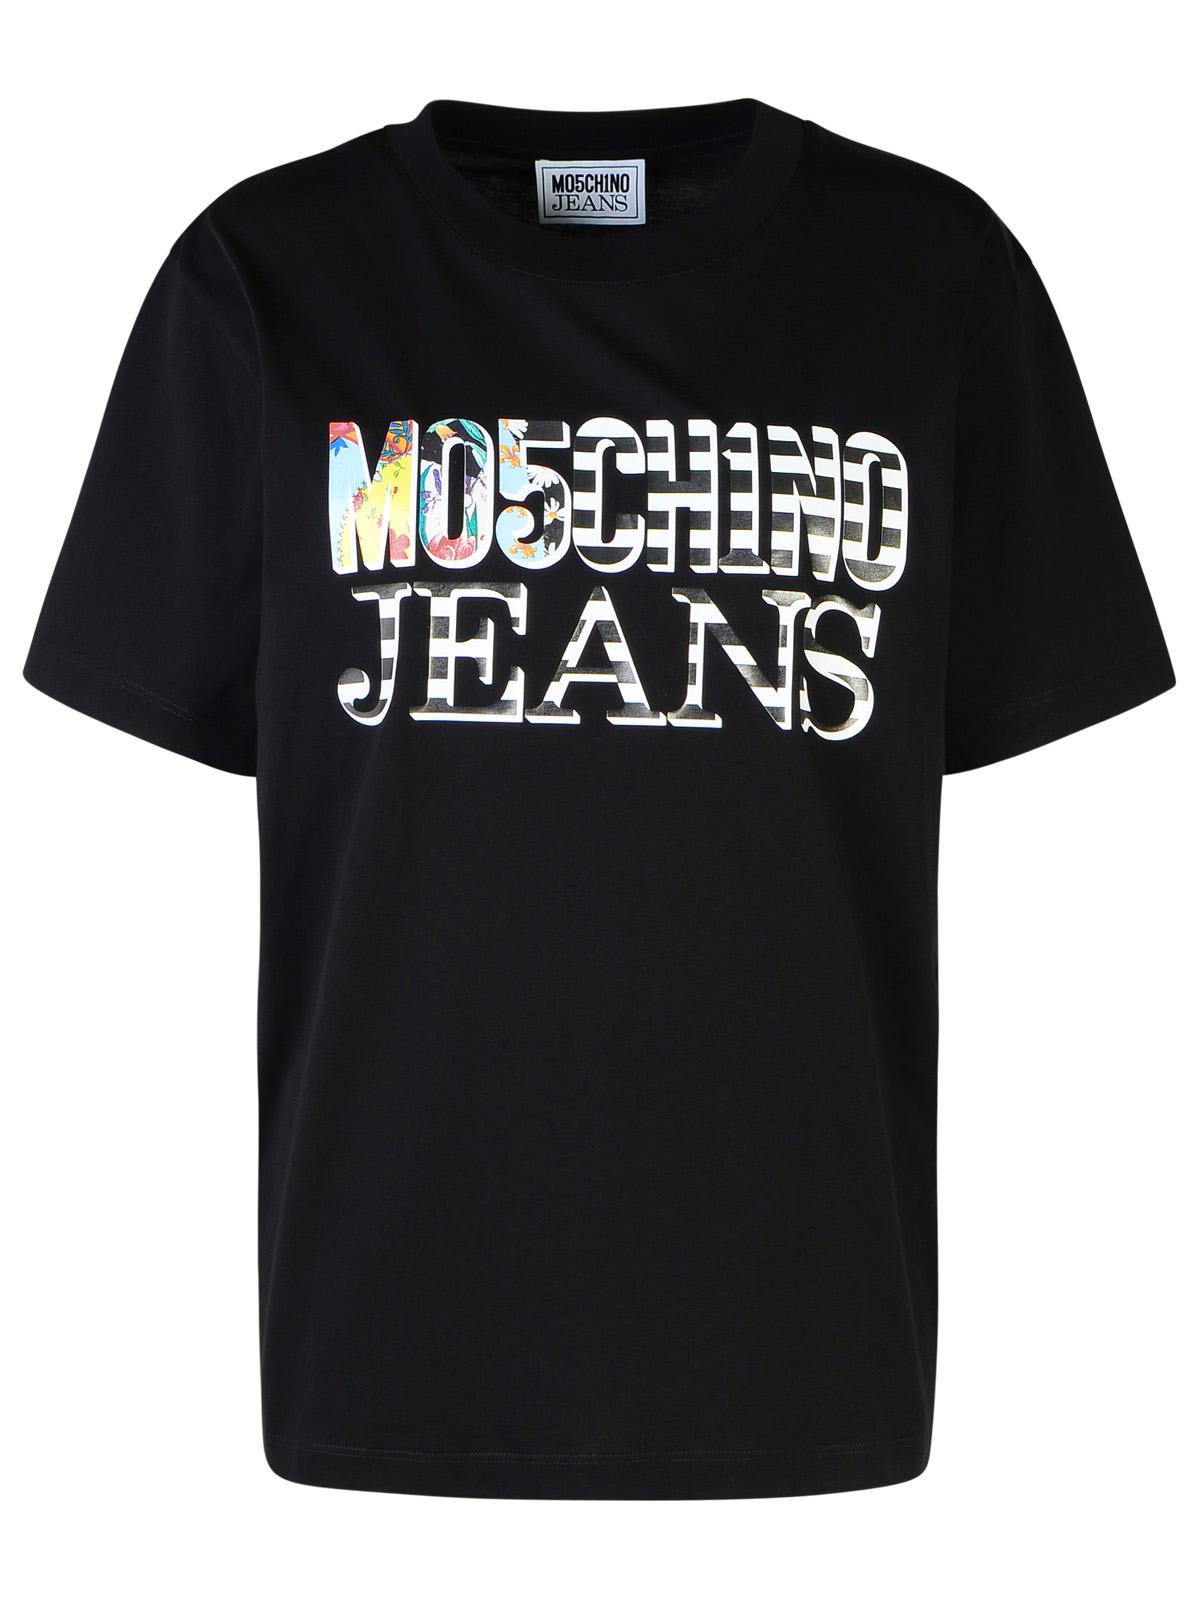 M05ch1n0 Jeans Black Cotton T-shirt